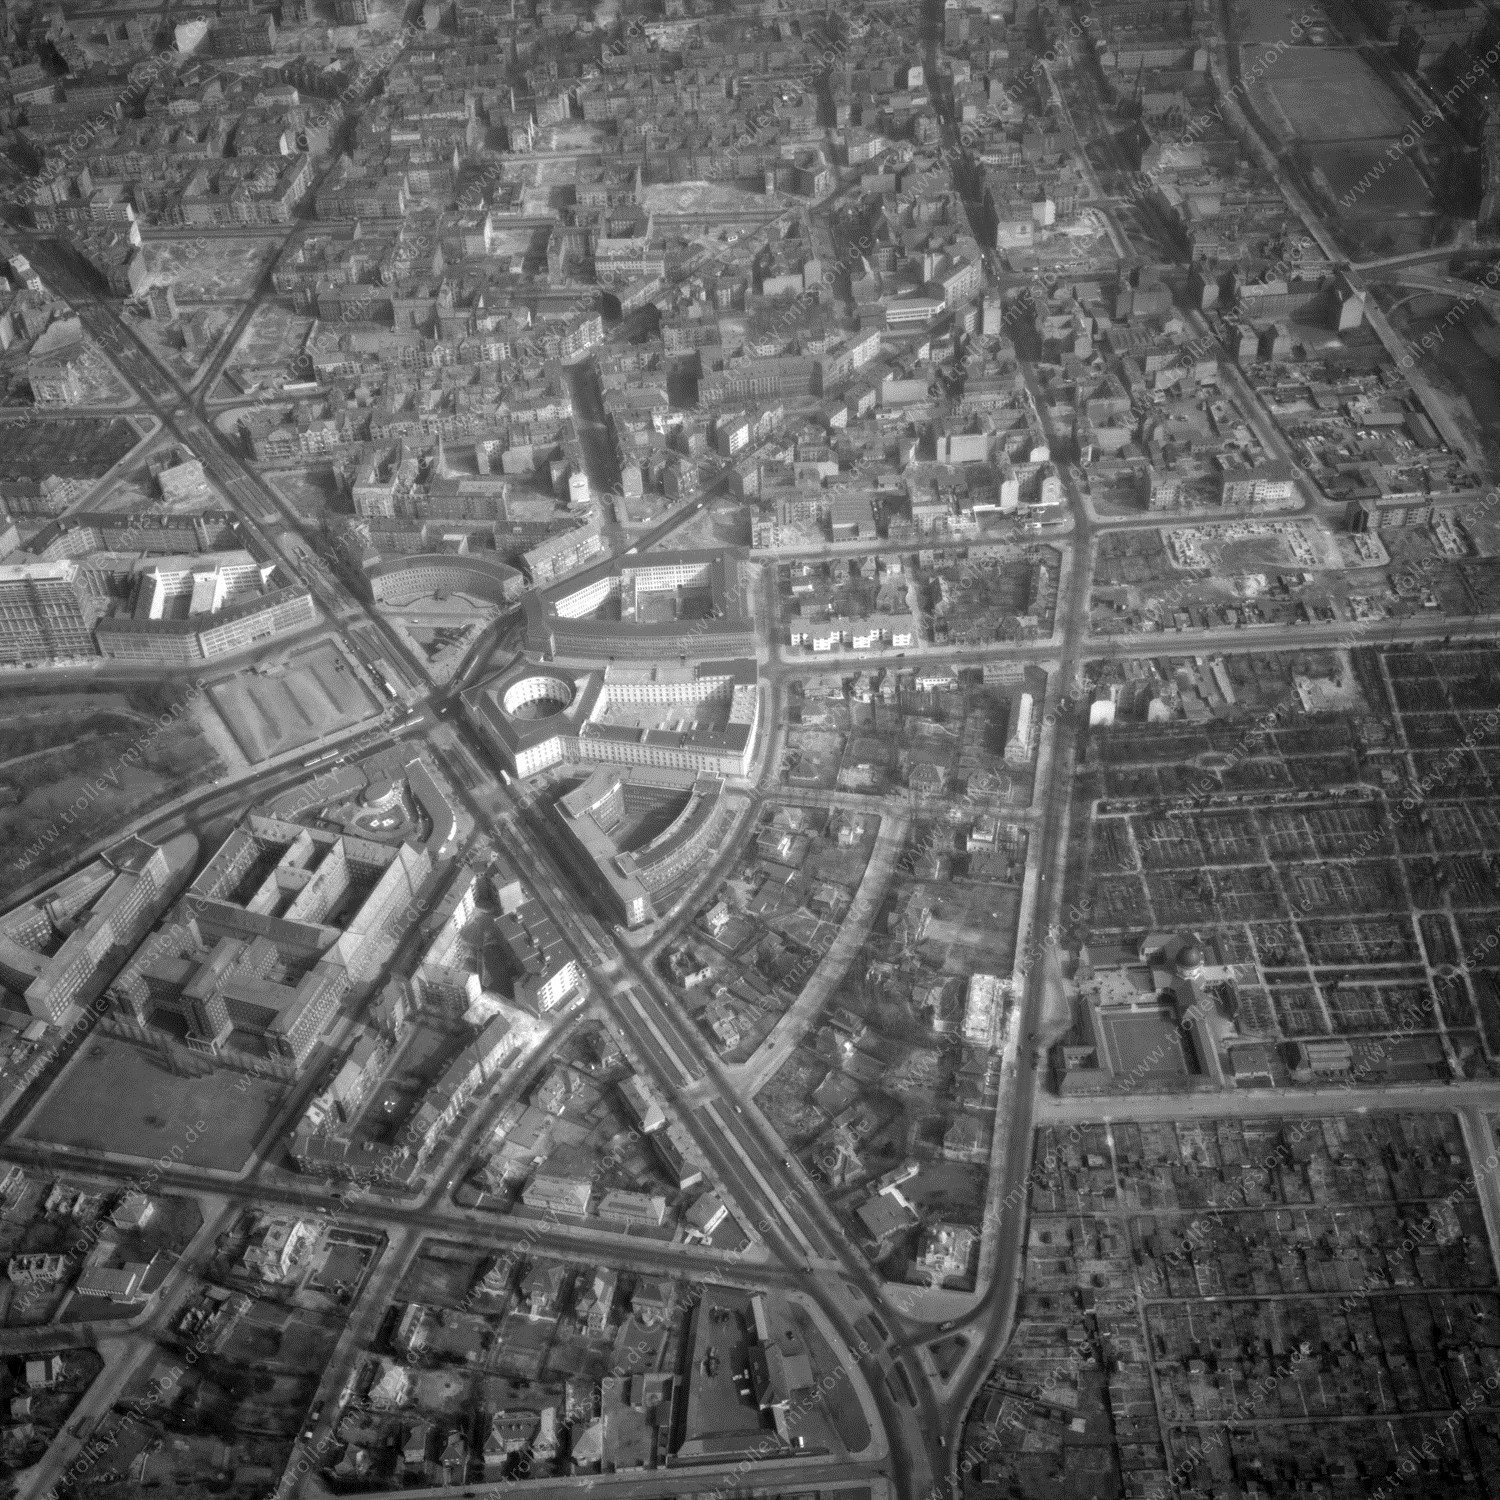 Alte Fotos und Luftbilder von Berlin - Luftbildaufnahme Nr. 05 - Historische Luftaufnahmen von West-Berlin aus dem Jahr 1954 - Flugstrecke Charlie